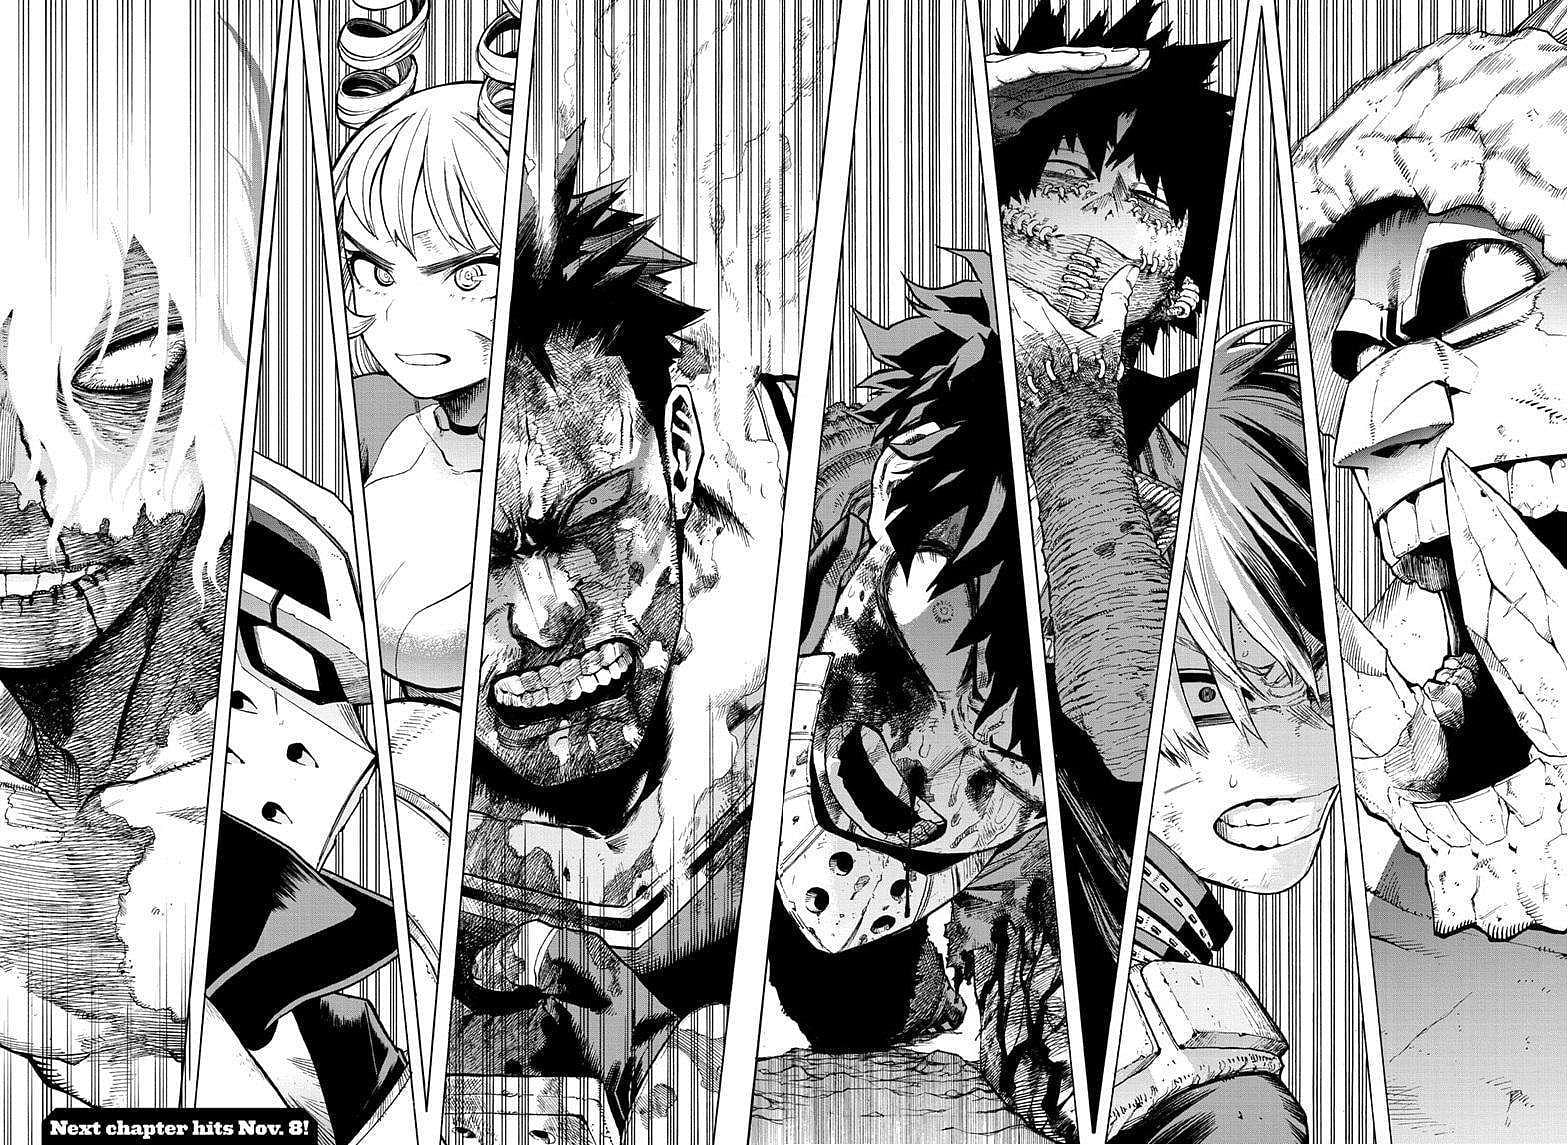 A panel from the My Hero Academia manga (Image via Kohei Horikoshi/Shueisha)